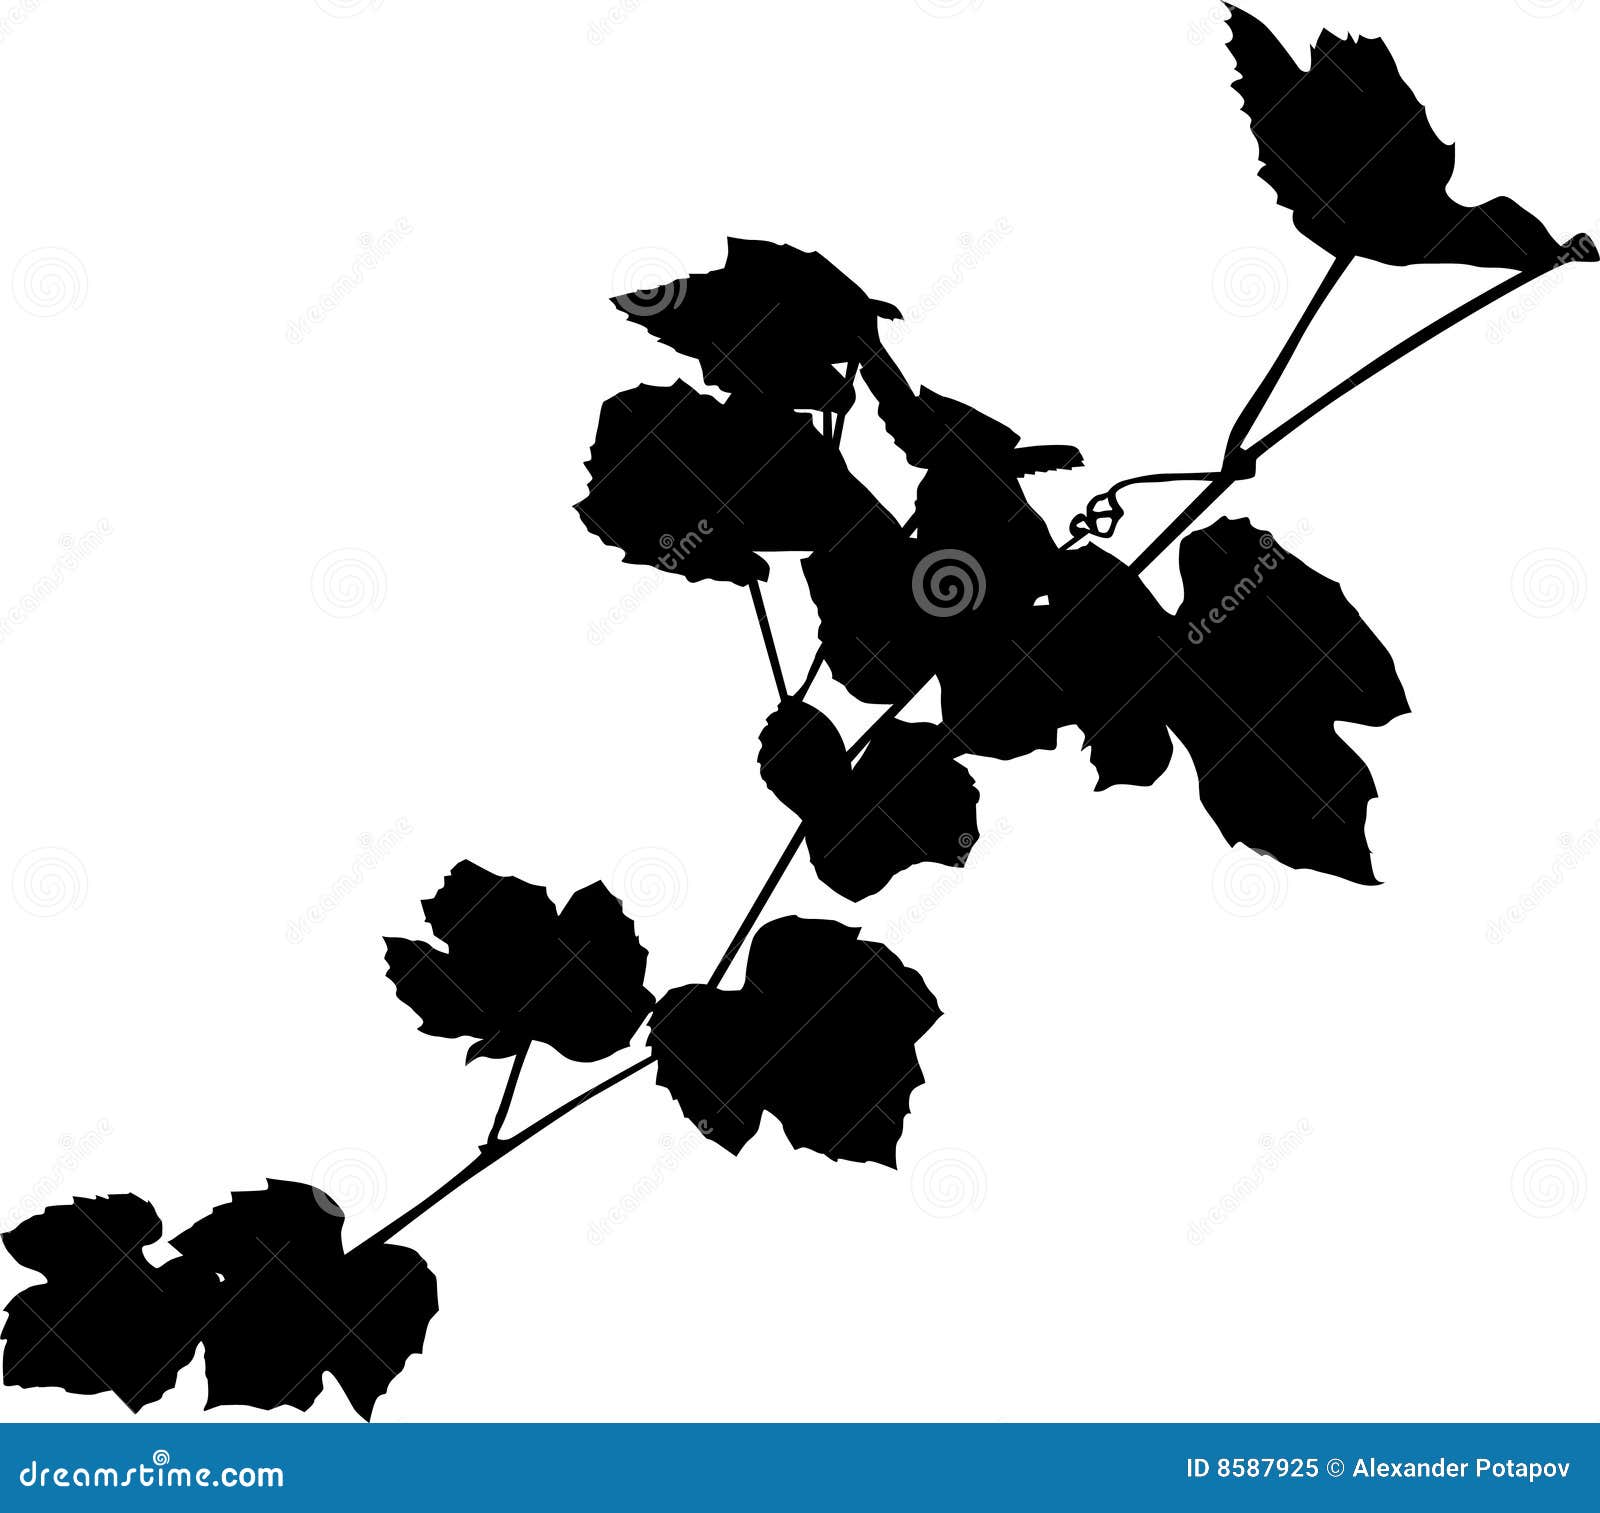 Vine black silhouette stock illustration. Illustration of fruit - 8587925